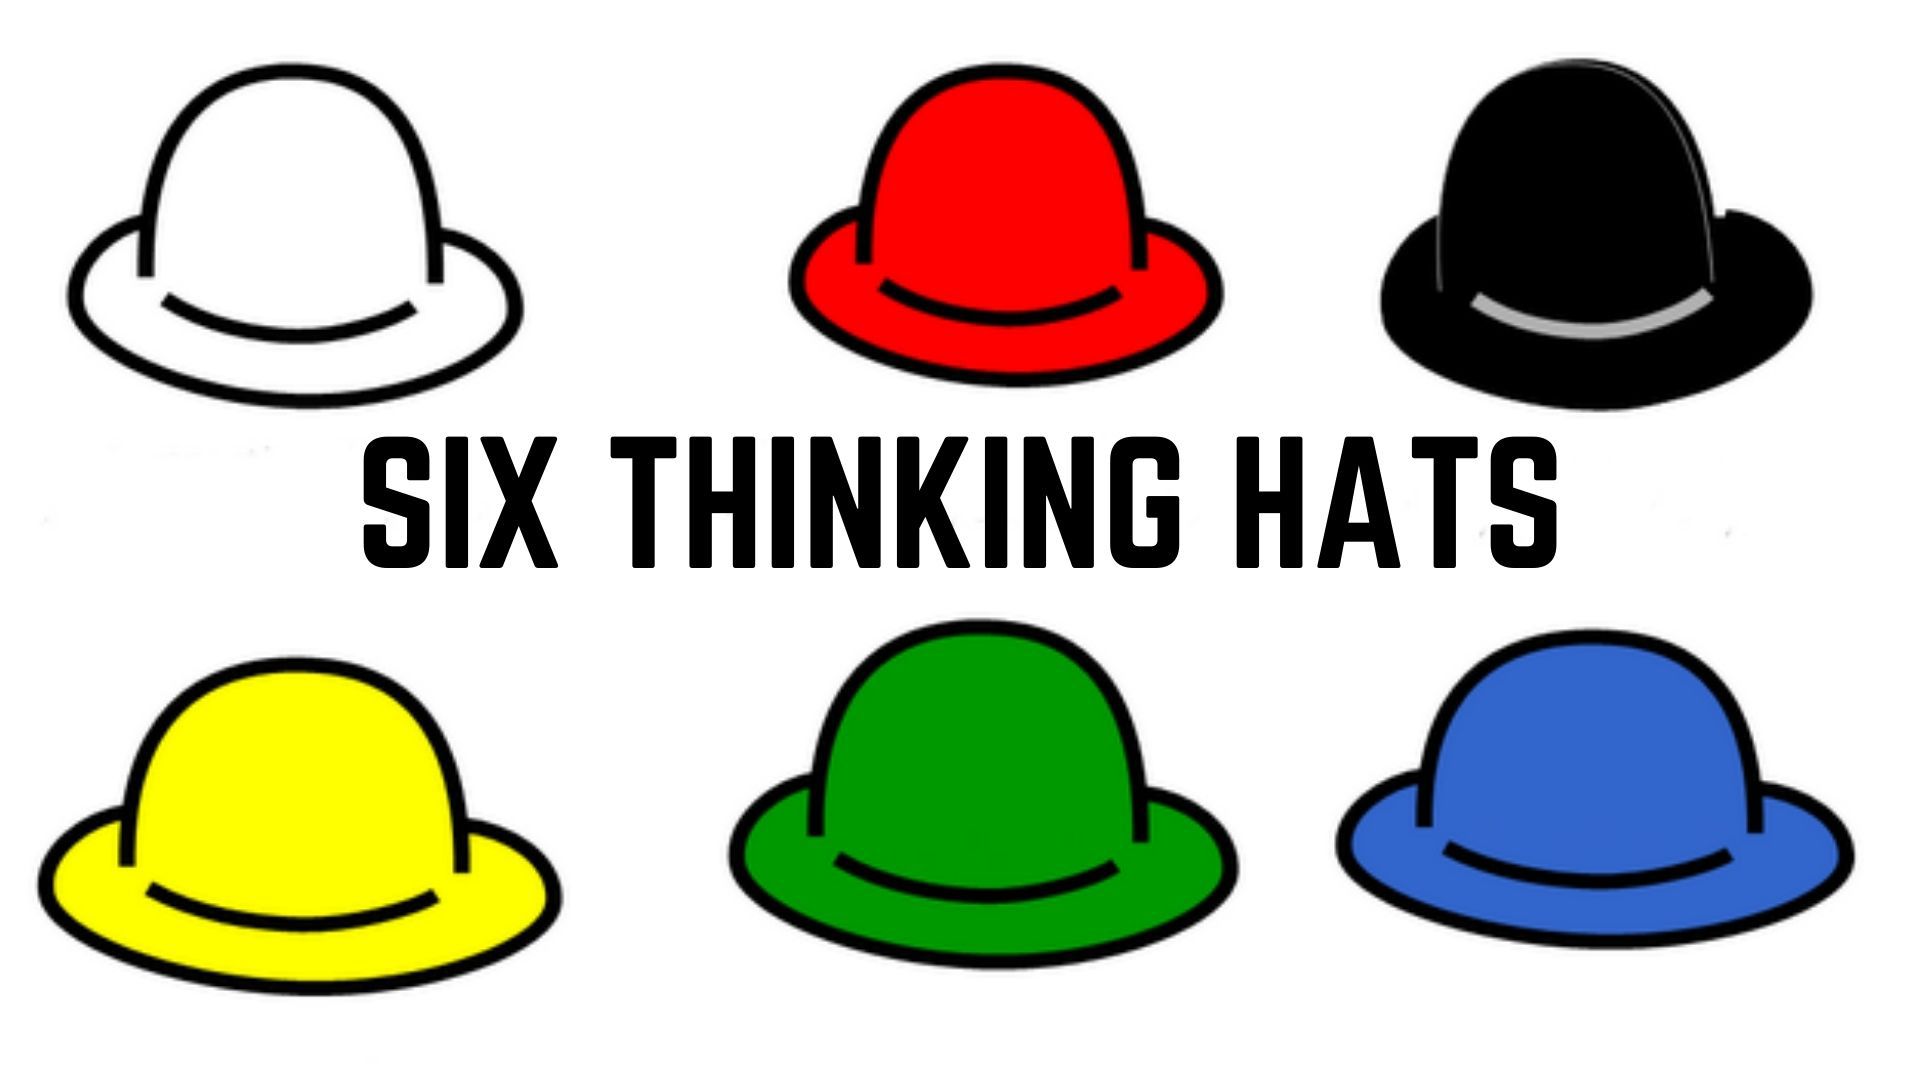 ما هي قبعات التفكير الست وما هي فوائدها؟